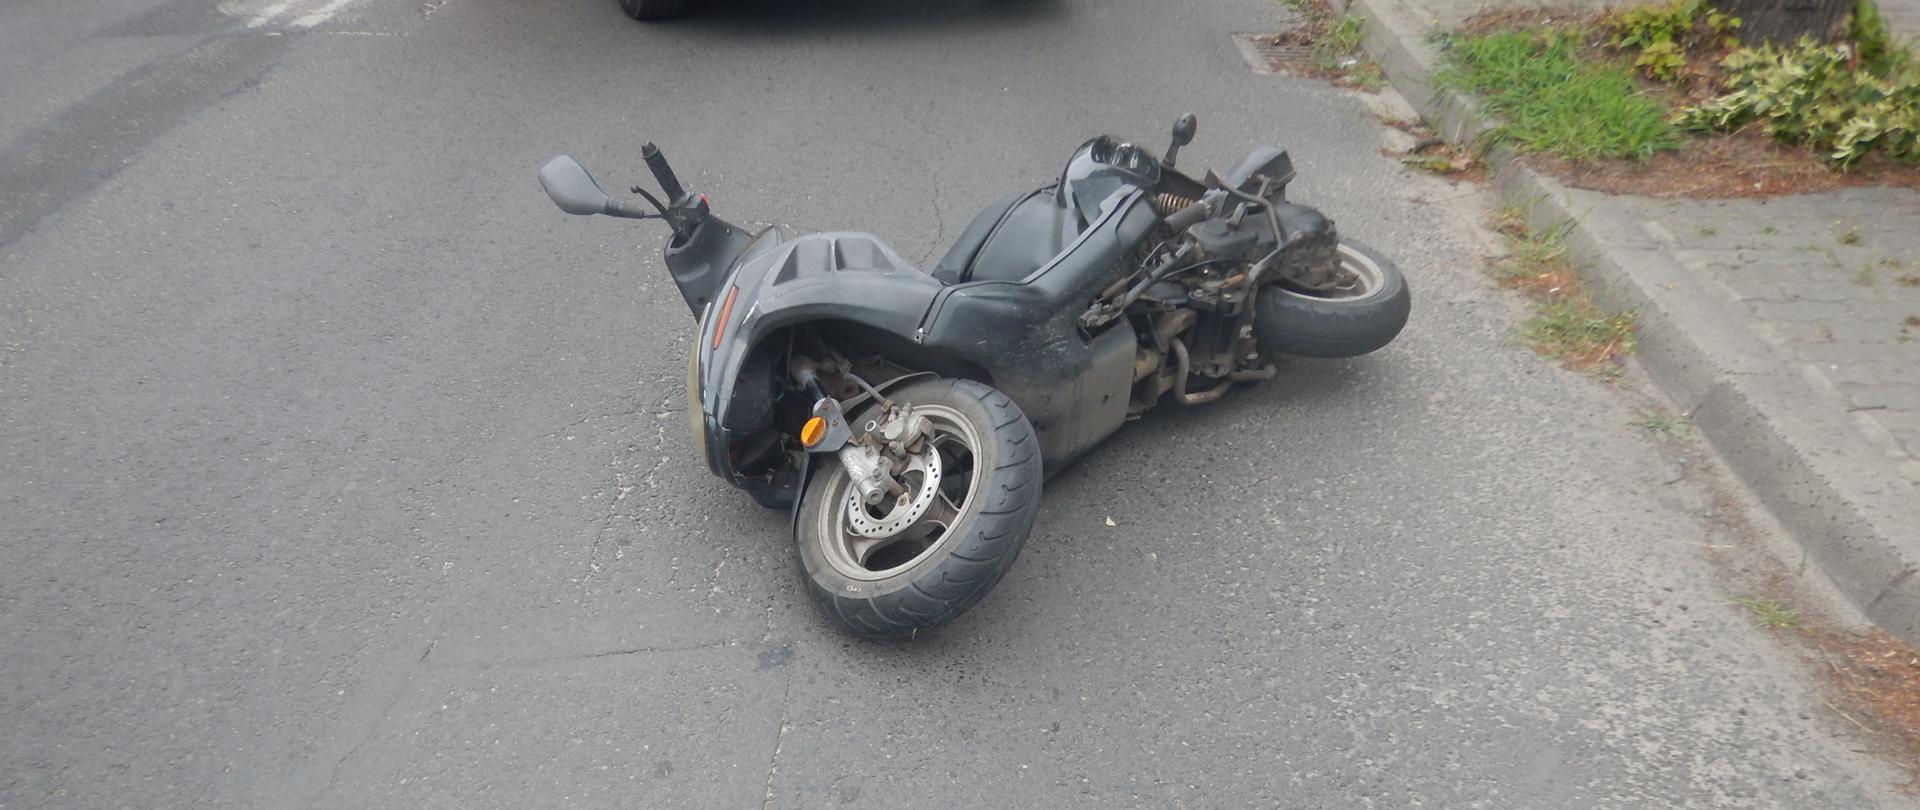 Zdjęcie przedstawia skuter, który został uszkodzony w wyniku zdarzenia